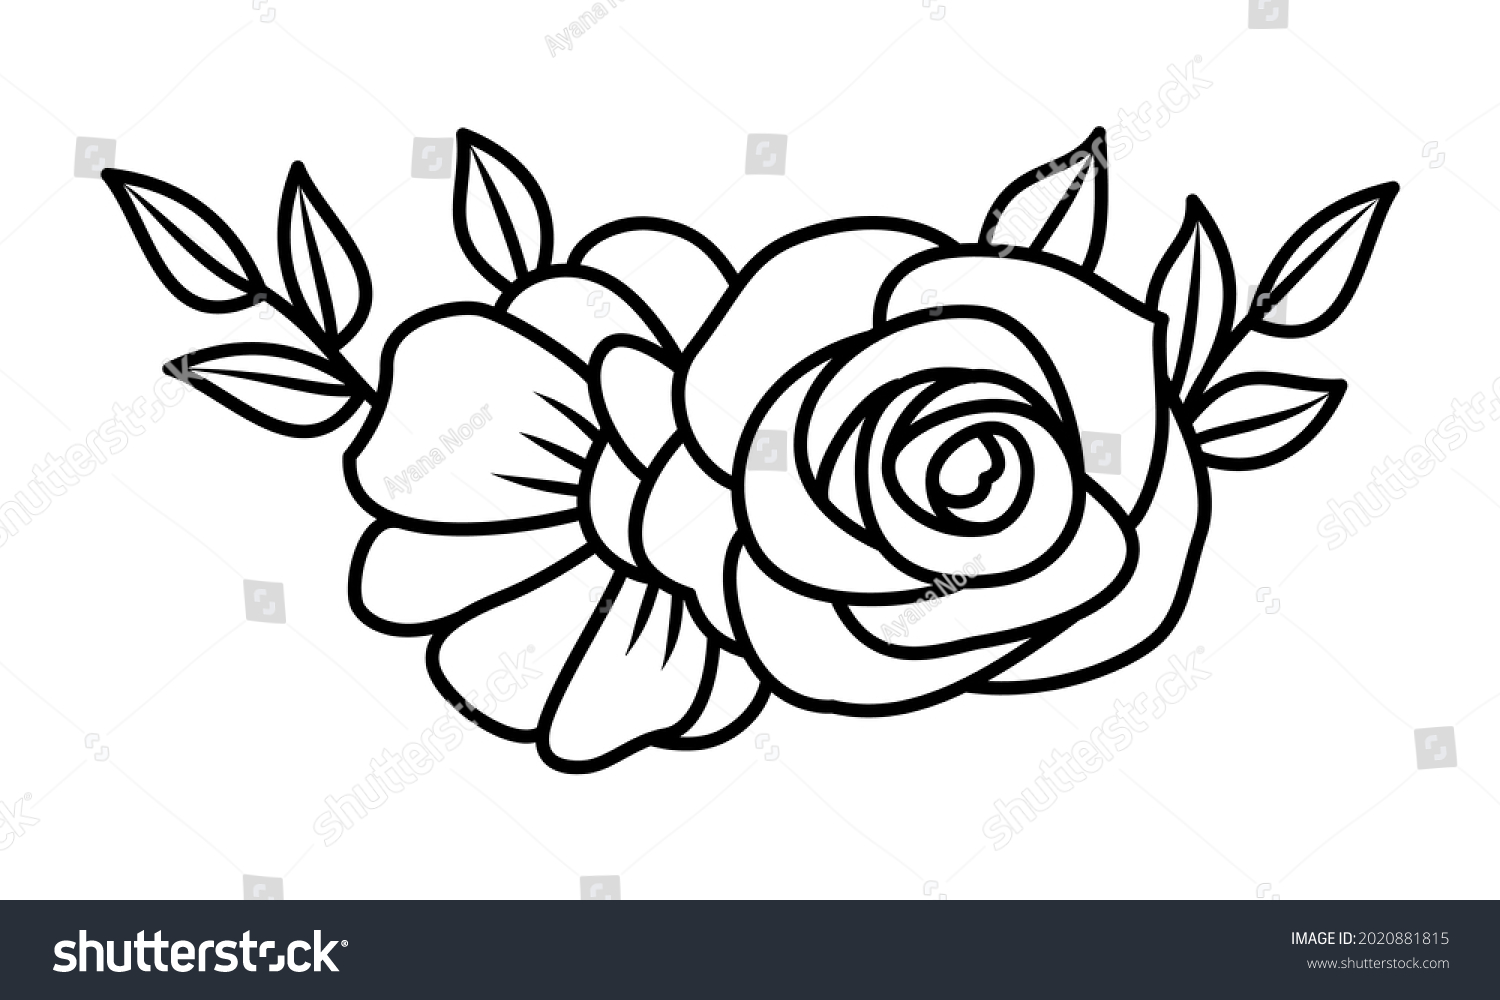 SVG of Double rose flower line design element. Black and white vector illustration svg